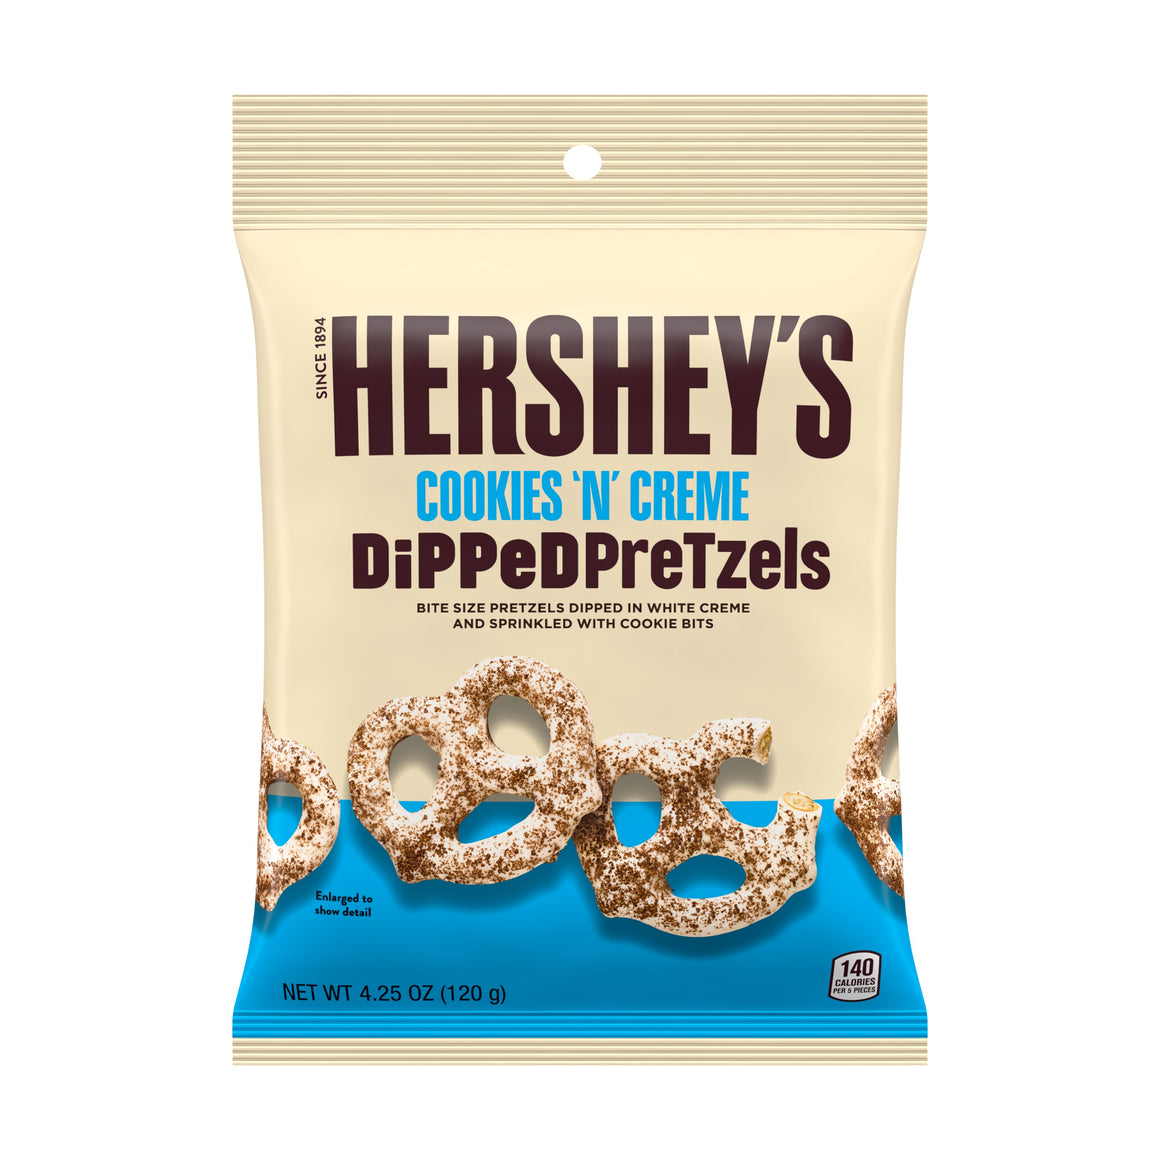 HERSHEY'S DiPPeD PreTzels COOKIES 'N' CREME Snack 120gm Hershey's